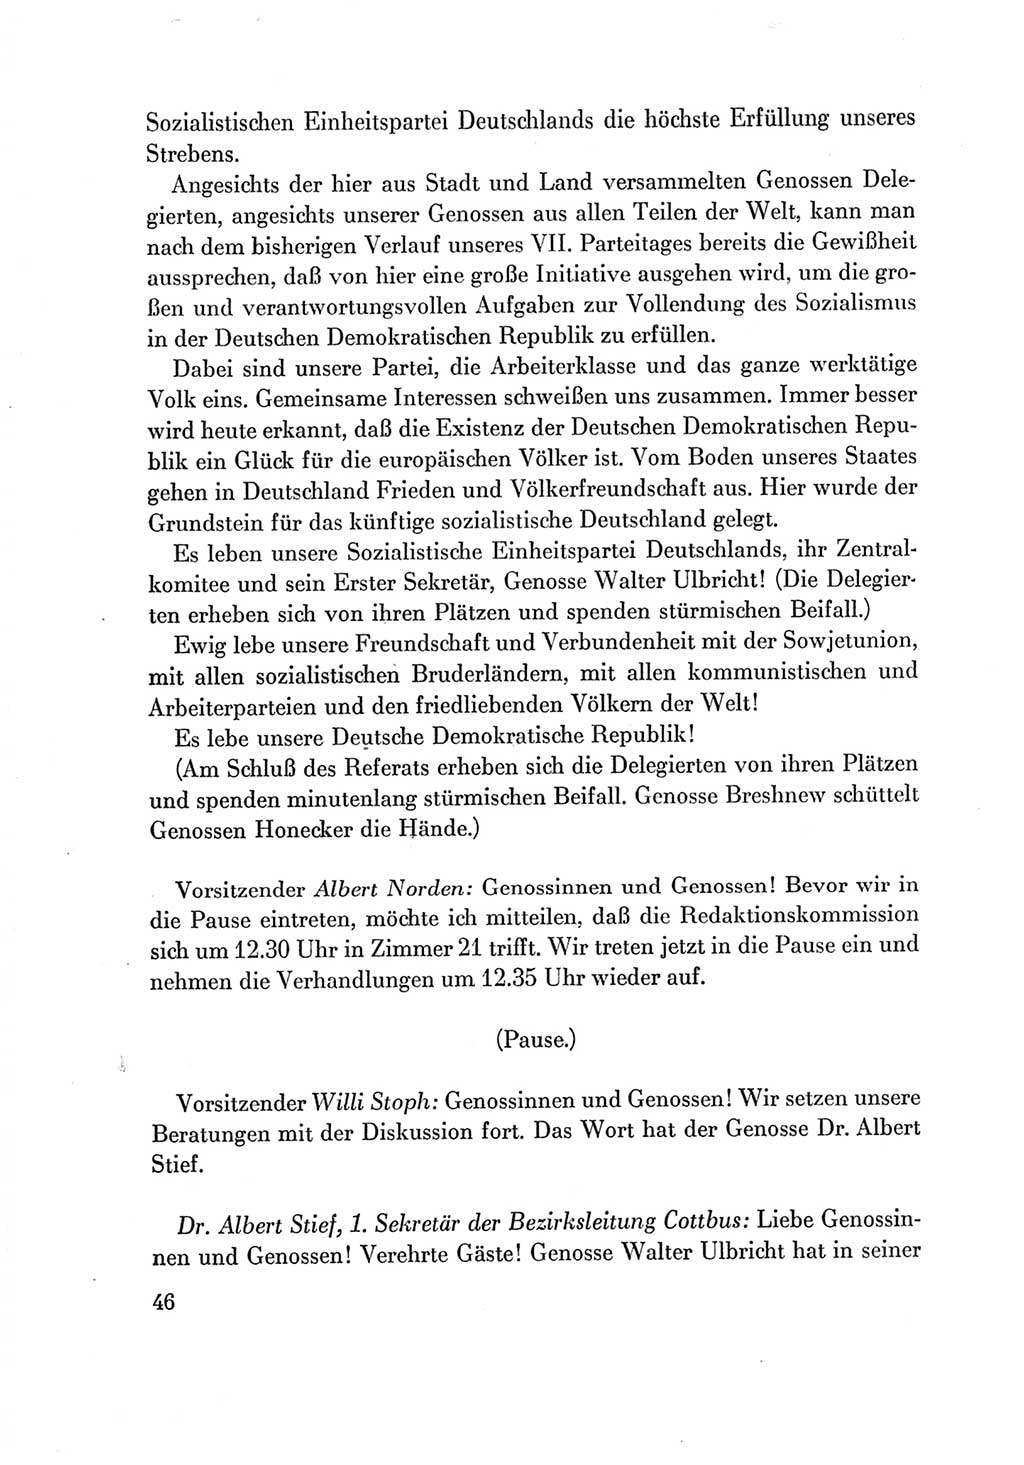 Protokoll der Verhandlungen des Ⅶ. Parteitages der Sozialistischen Einheitspartei Deutschlands (SED) [Deutsche Demokratische Republik (DDR)] 1967, Band Ⅱ, Seite 46 (Prot. Verh. Ⅶ. PT SED DDR 1967, Bd. Ⅱ, S. 46)